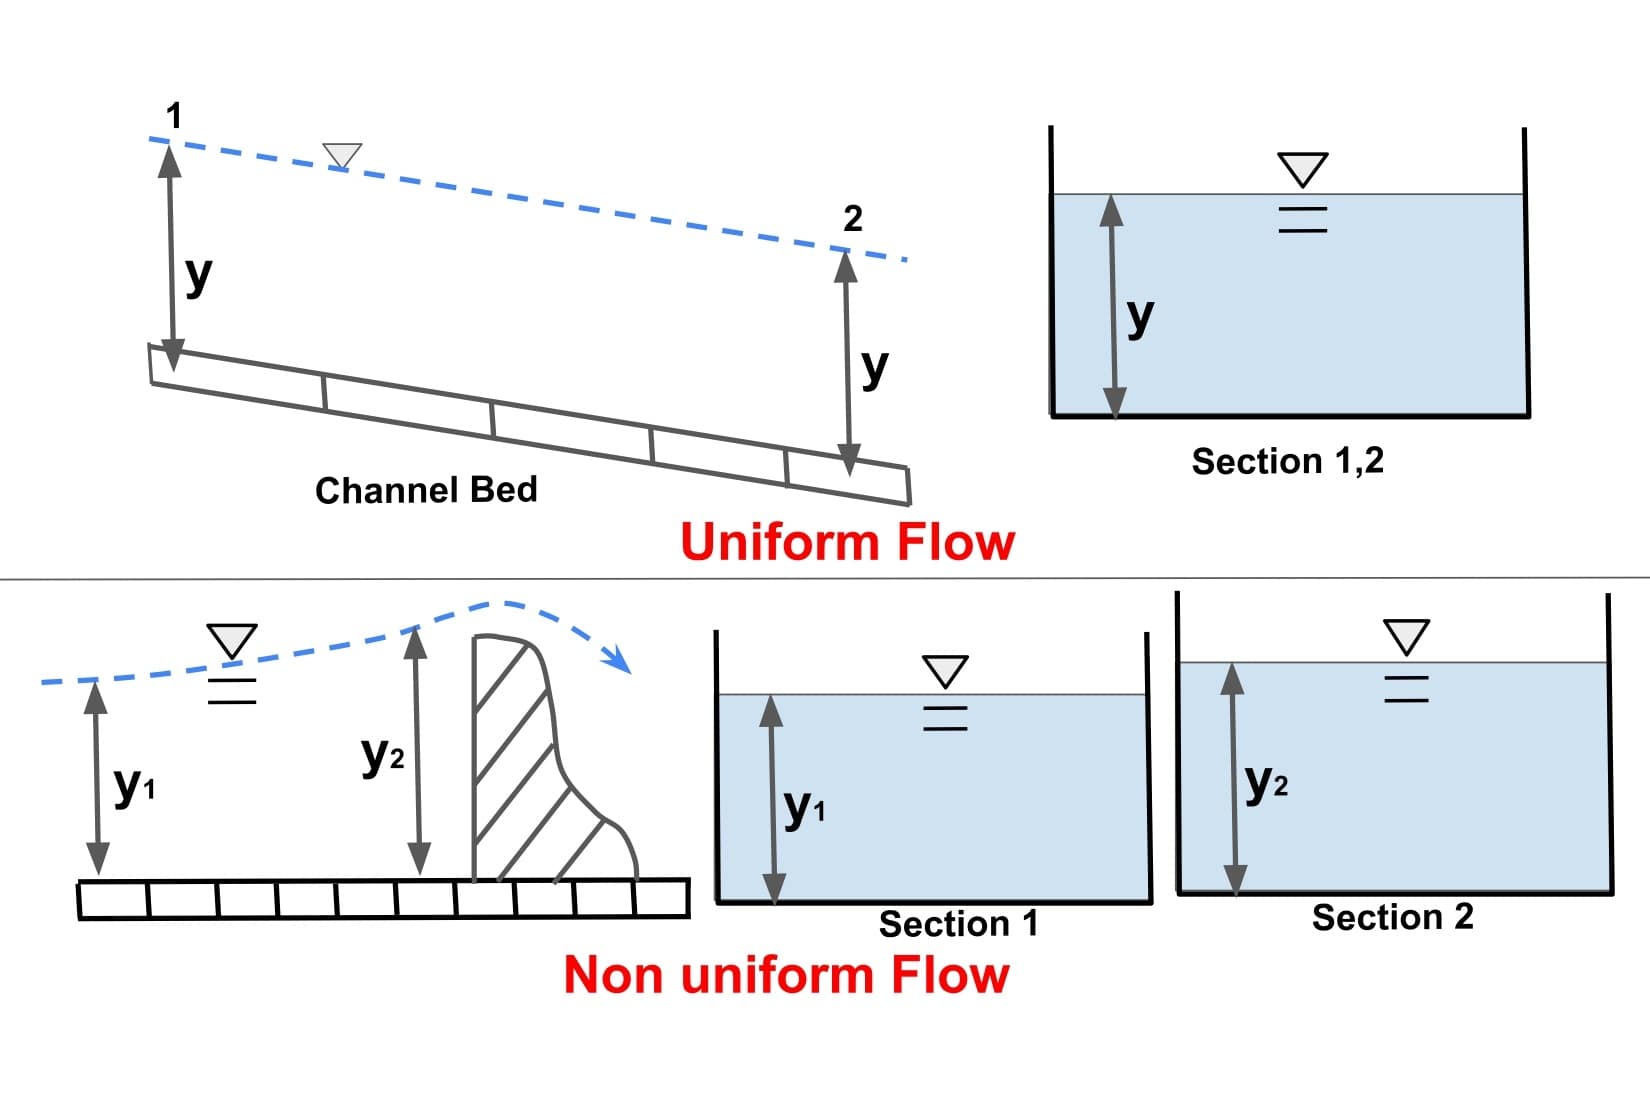 Uniform Flow and Non-uniform flows